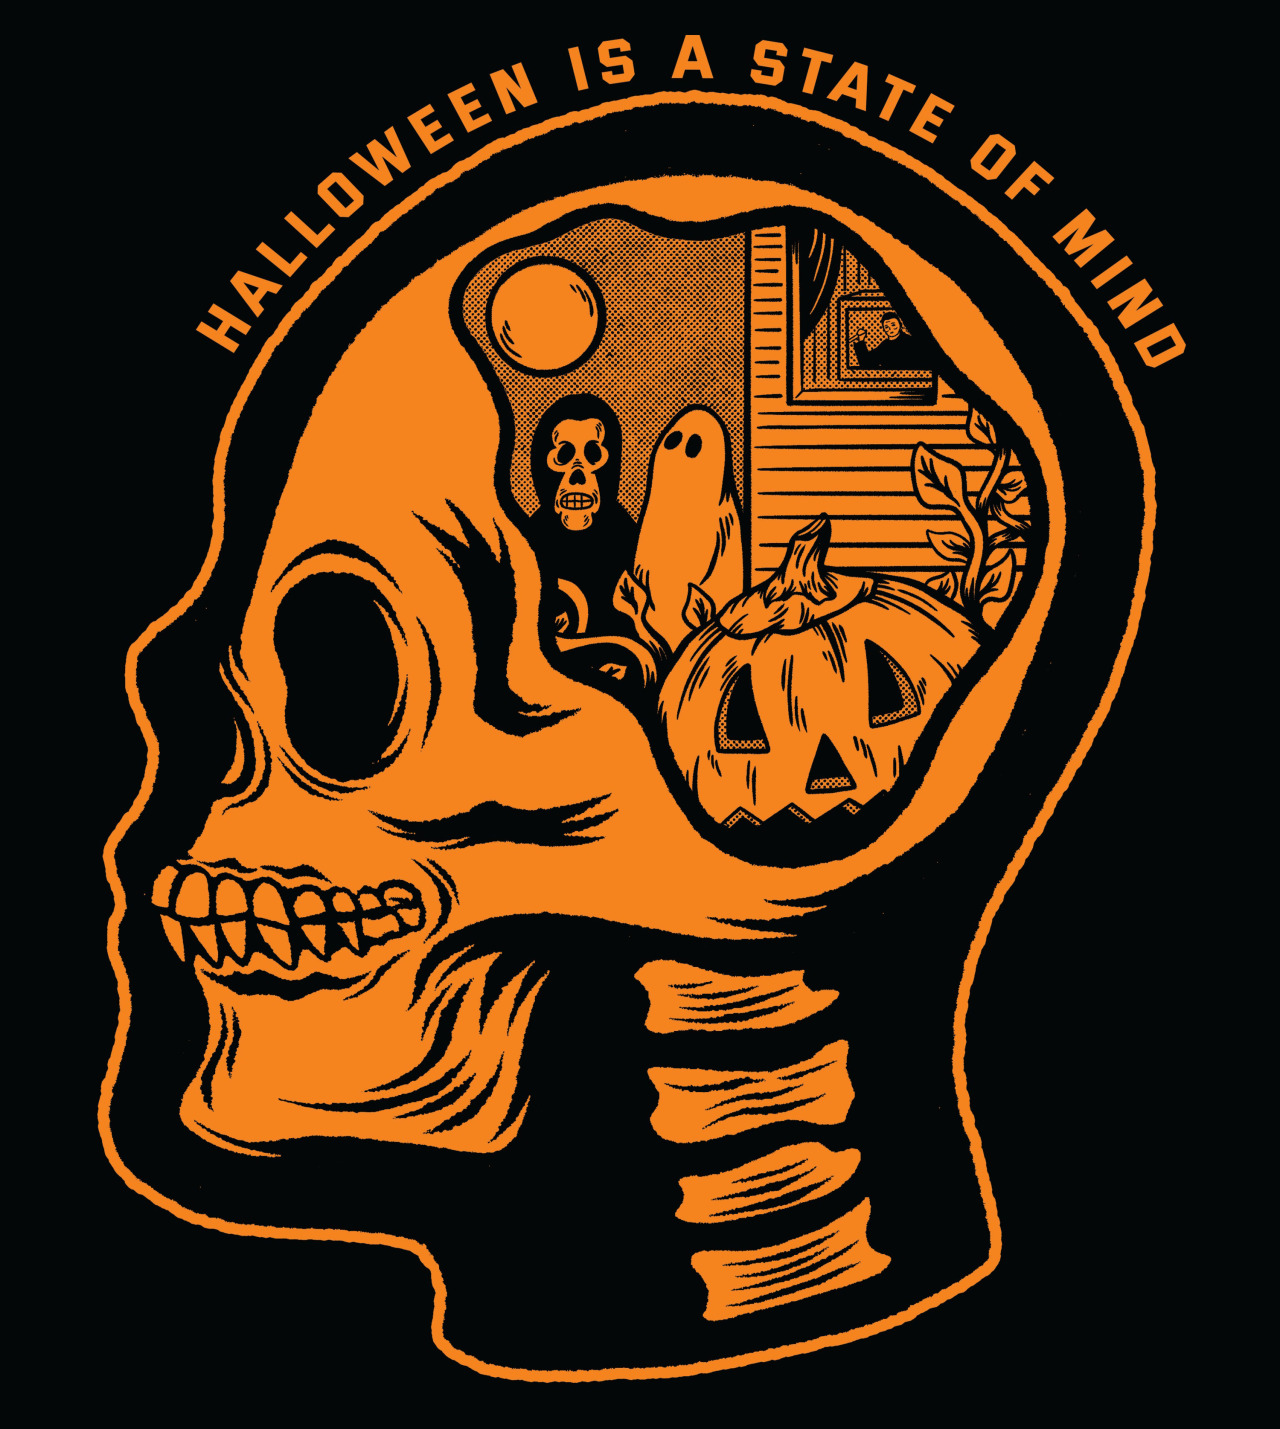 Halloween isn't just a day; it's a state of mind. - Broke Horror Fan